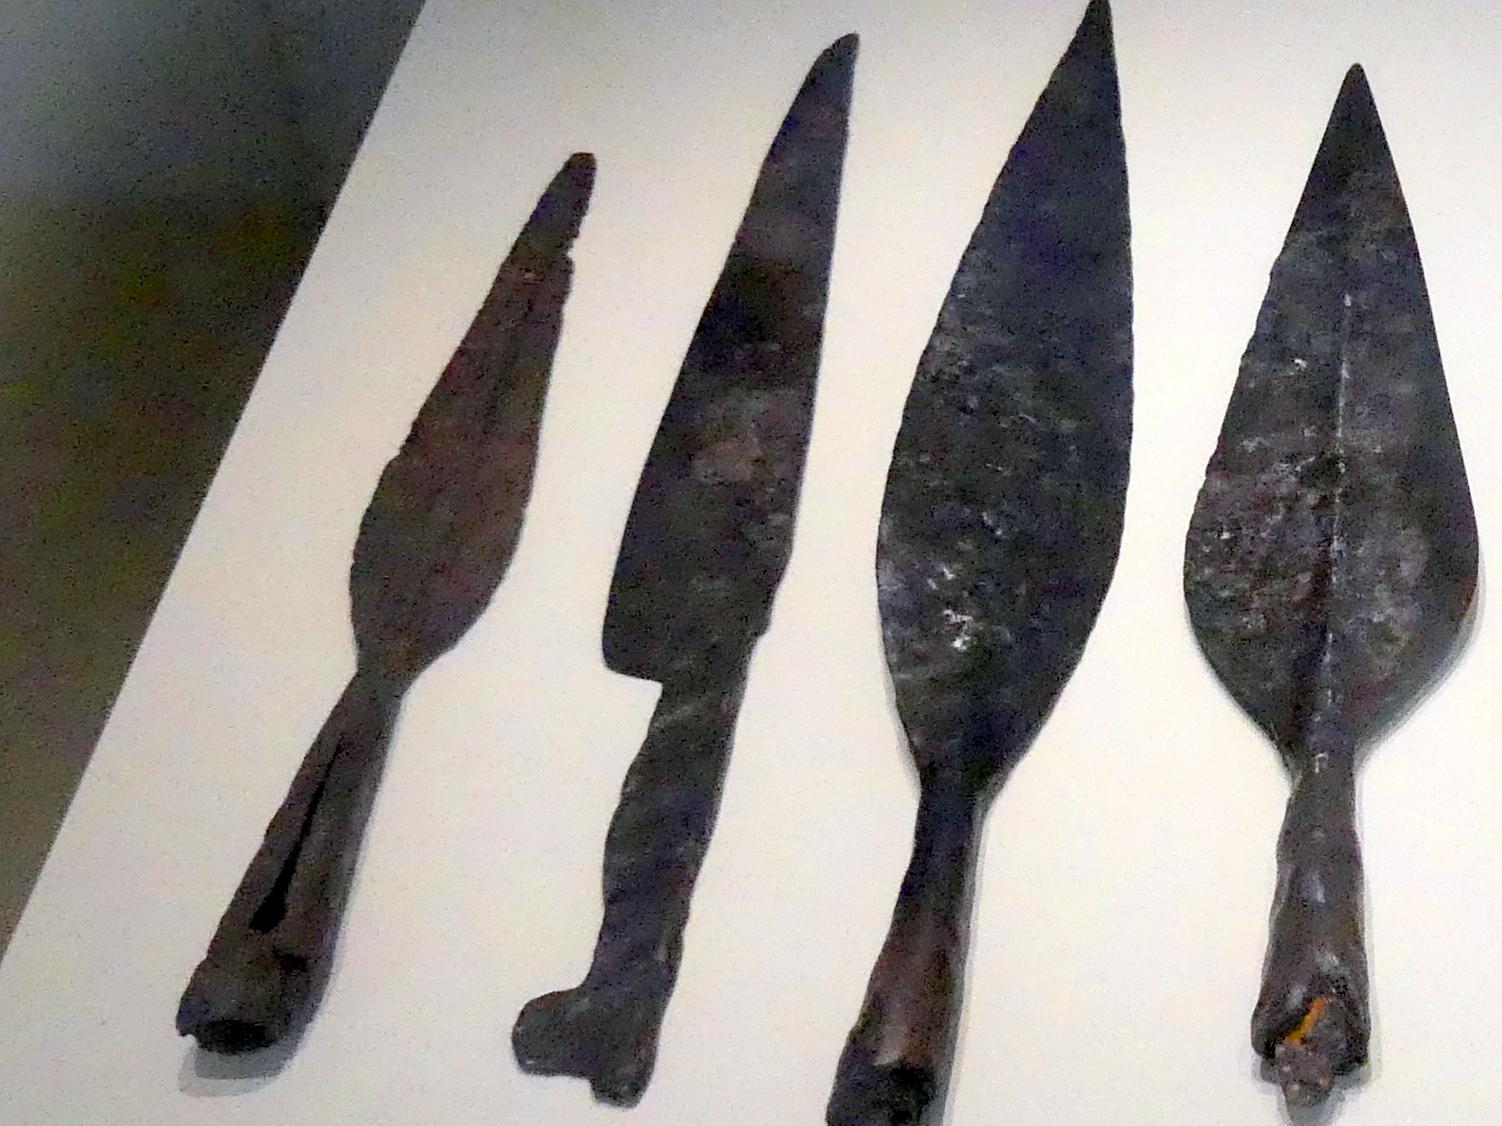 Messer, Hallstattzeit, 700 - 200 v. Chr., Bild 1/2